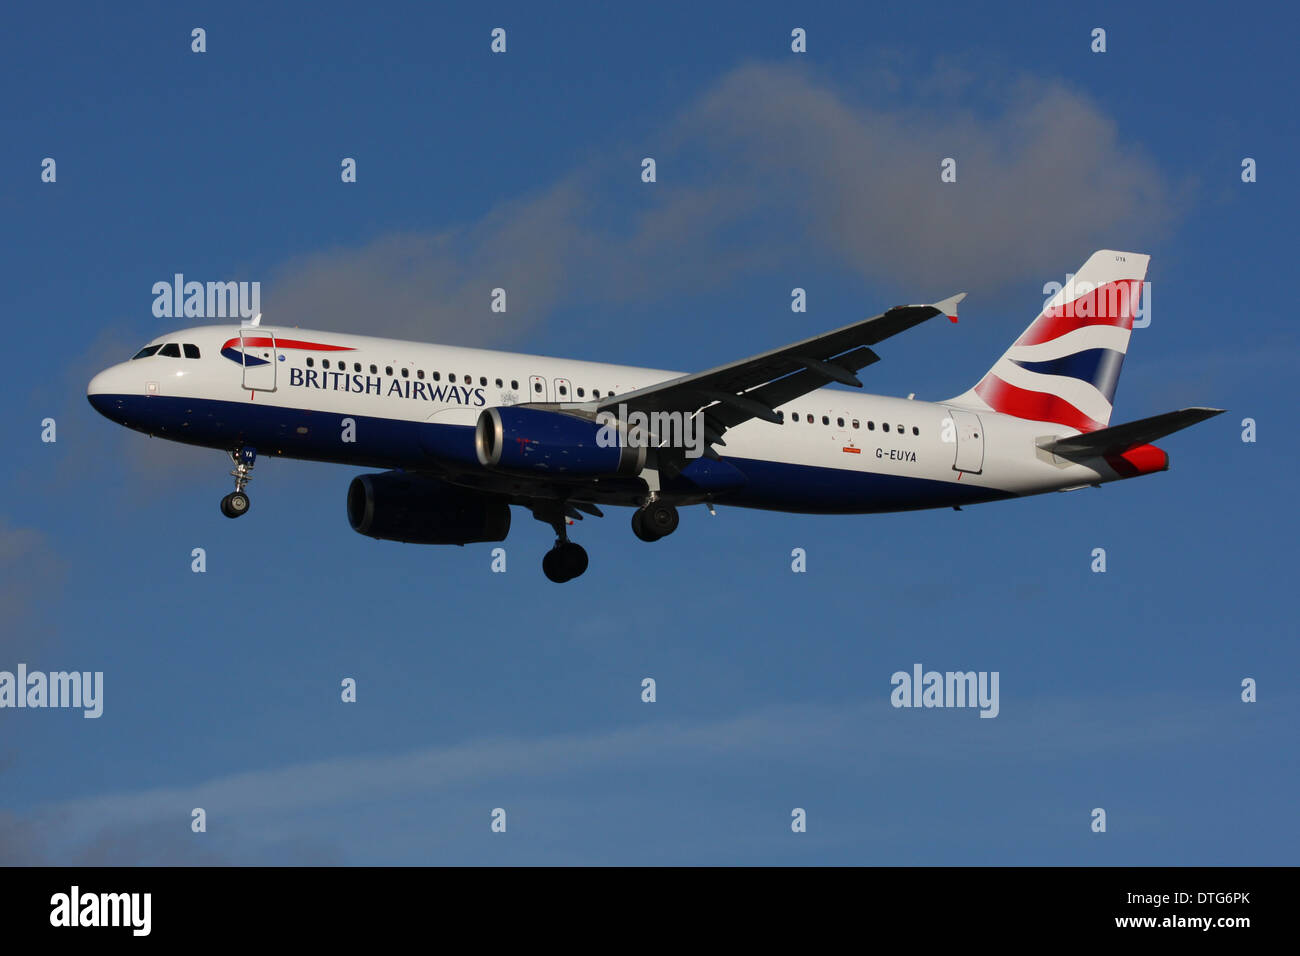 ba british airways airbus Stock Photo